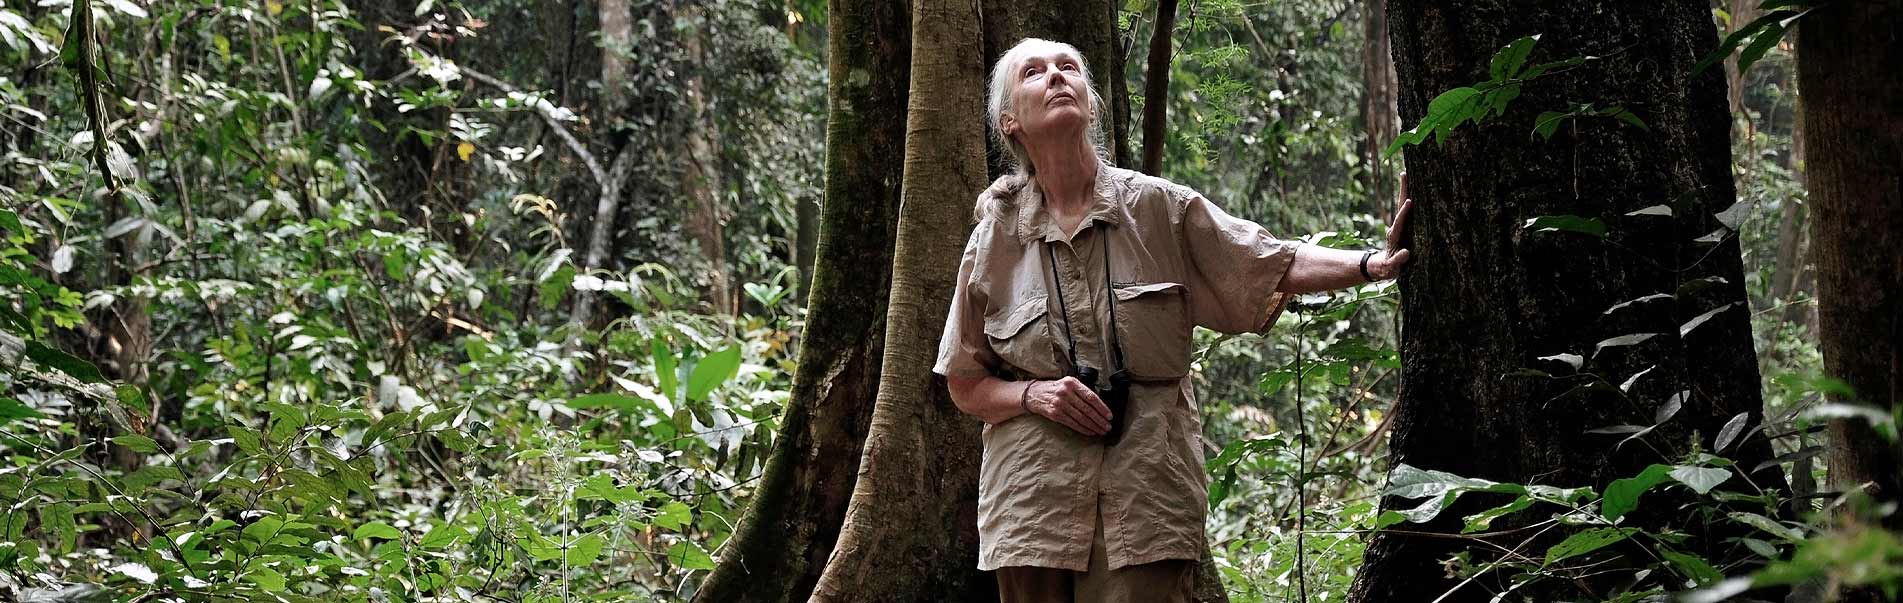 Jane Goodall sagt Danke!